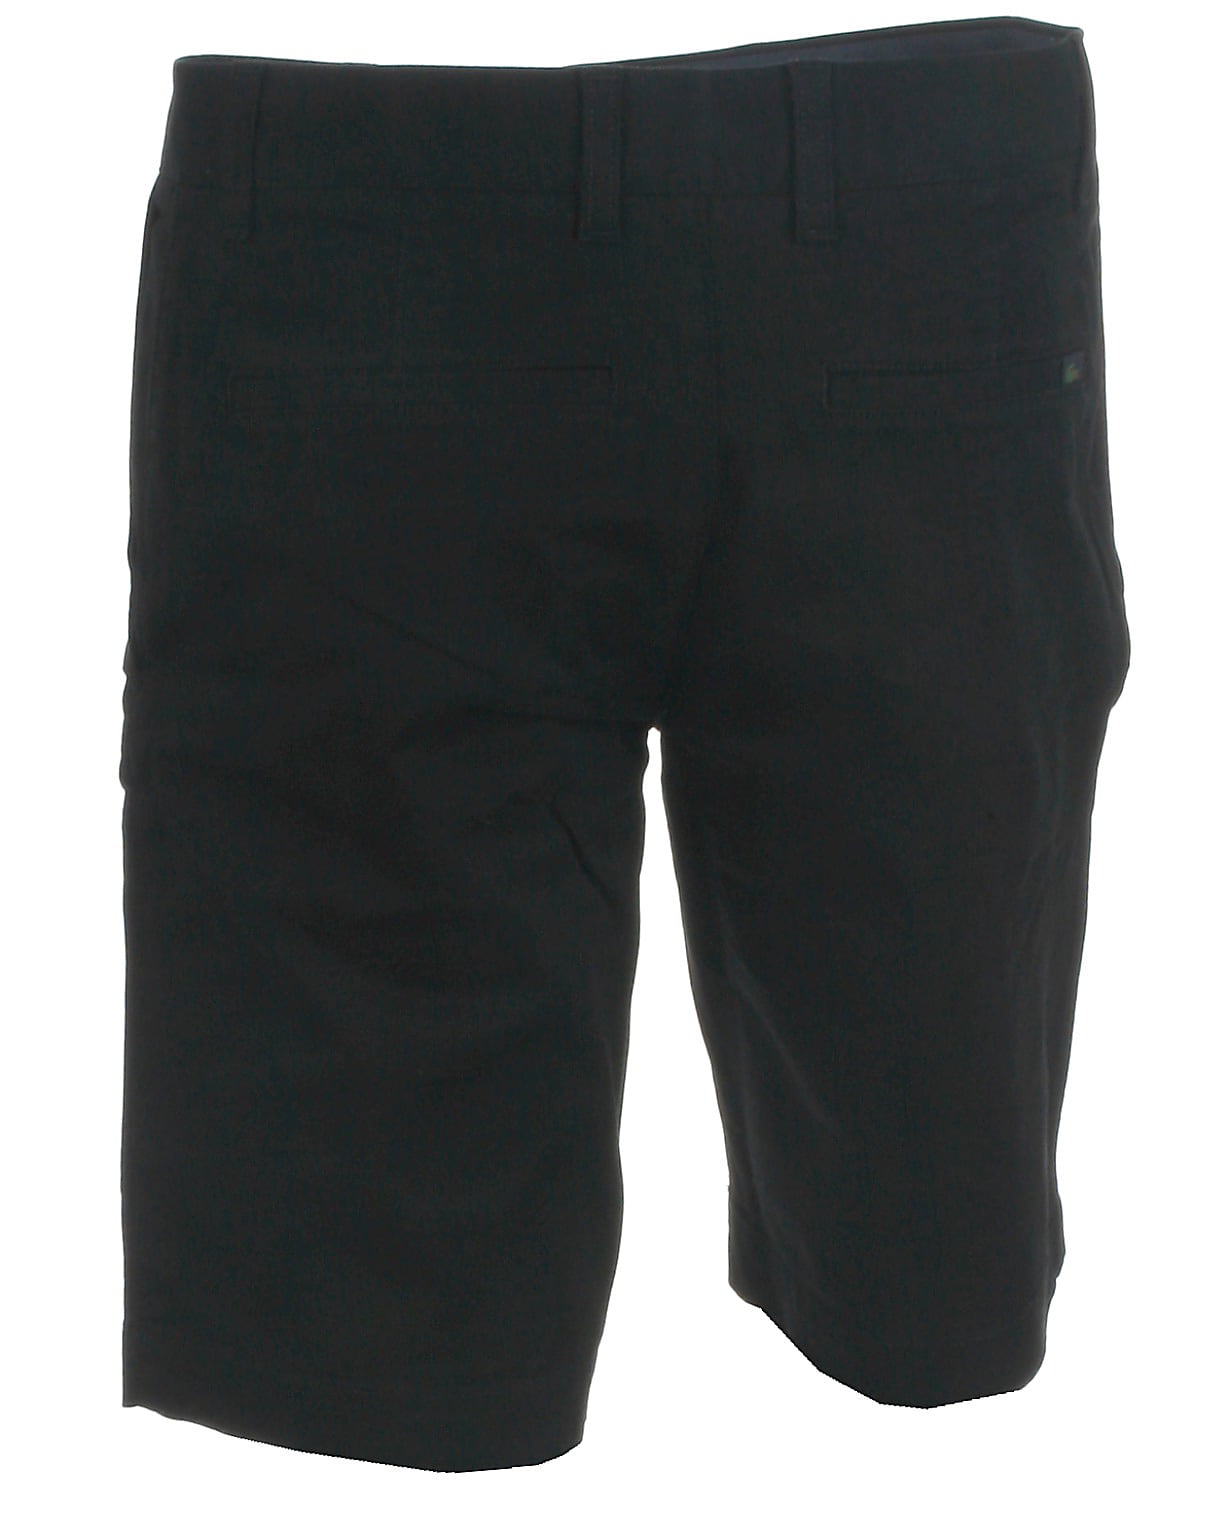 Se Lacoste chino shorts, sort - 182,M+,40 hos Umame.dk